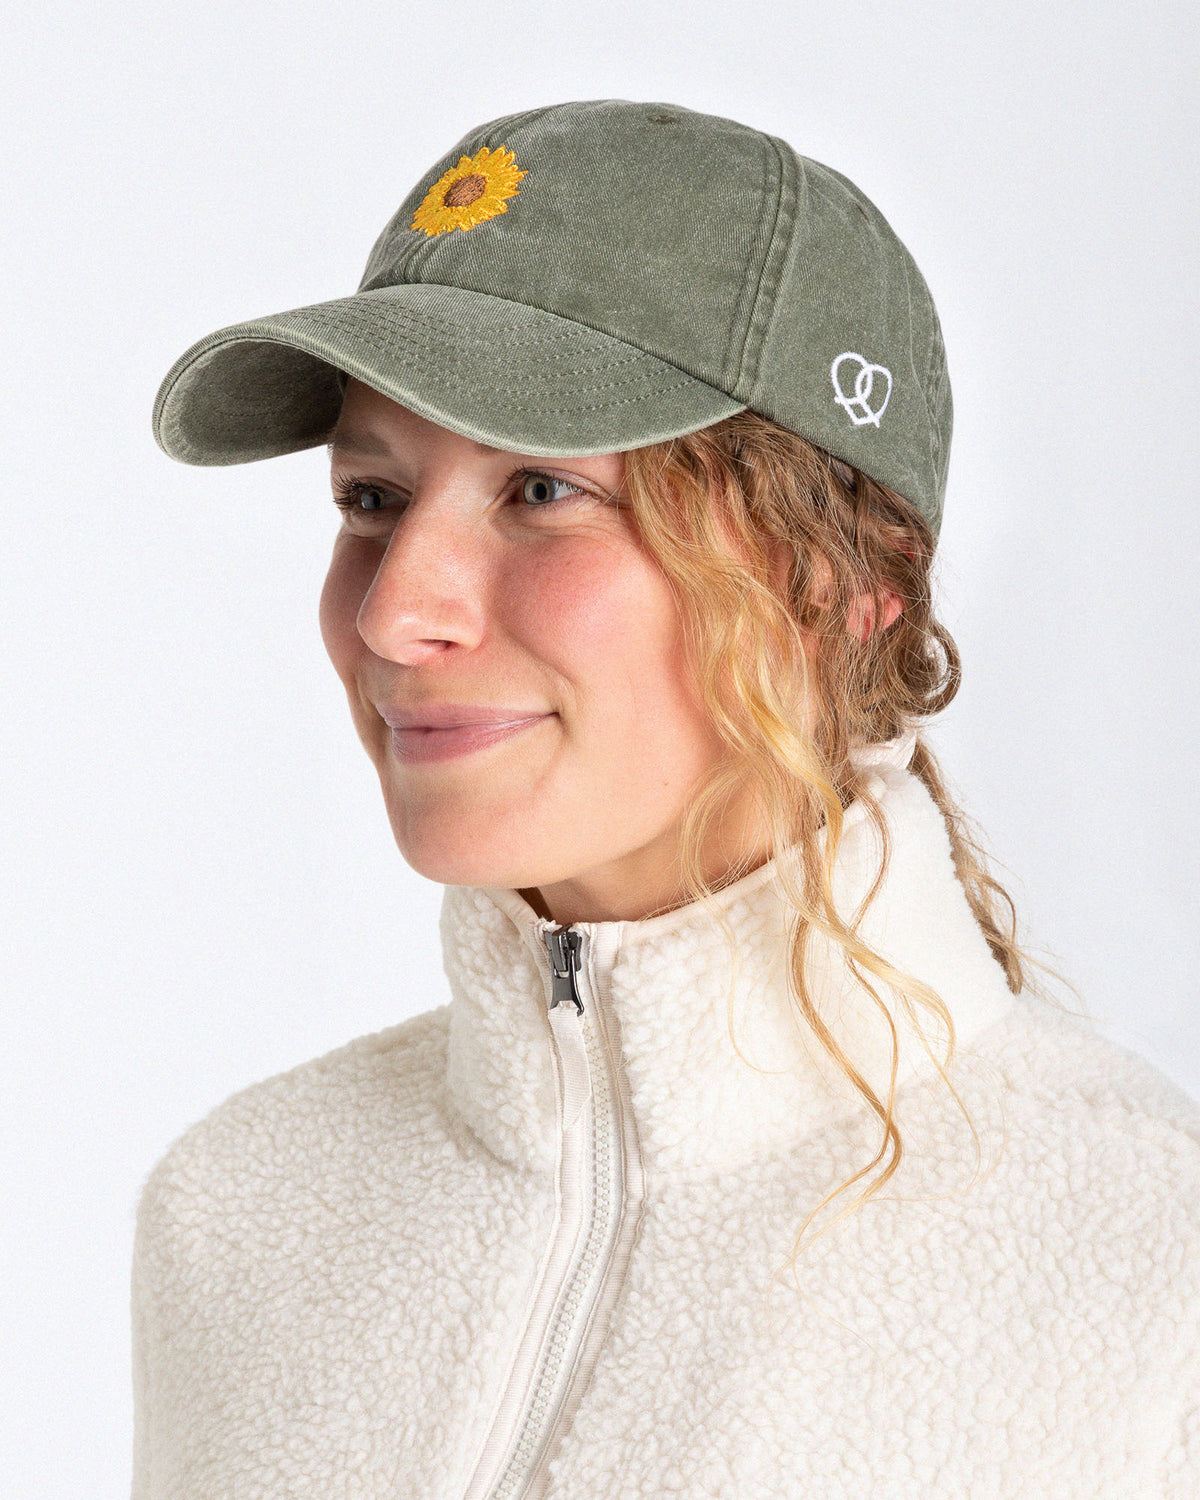 Ein weibliches Model trägt eine Bavarian Cap in der Farbe Vintage Khaki und als Motiv ist auf der Vorderseite eine Sonnenblume zu erkennen und an der Seite ein Brezn-Herz Logo in weiß gestickt.